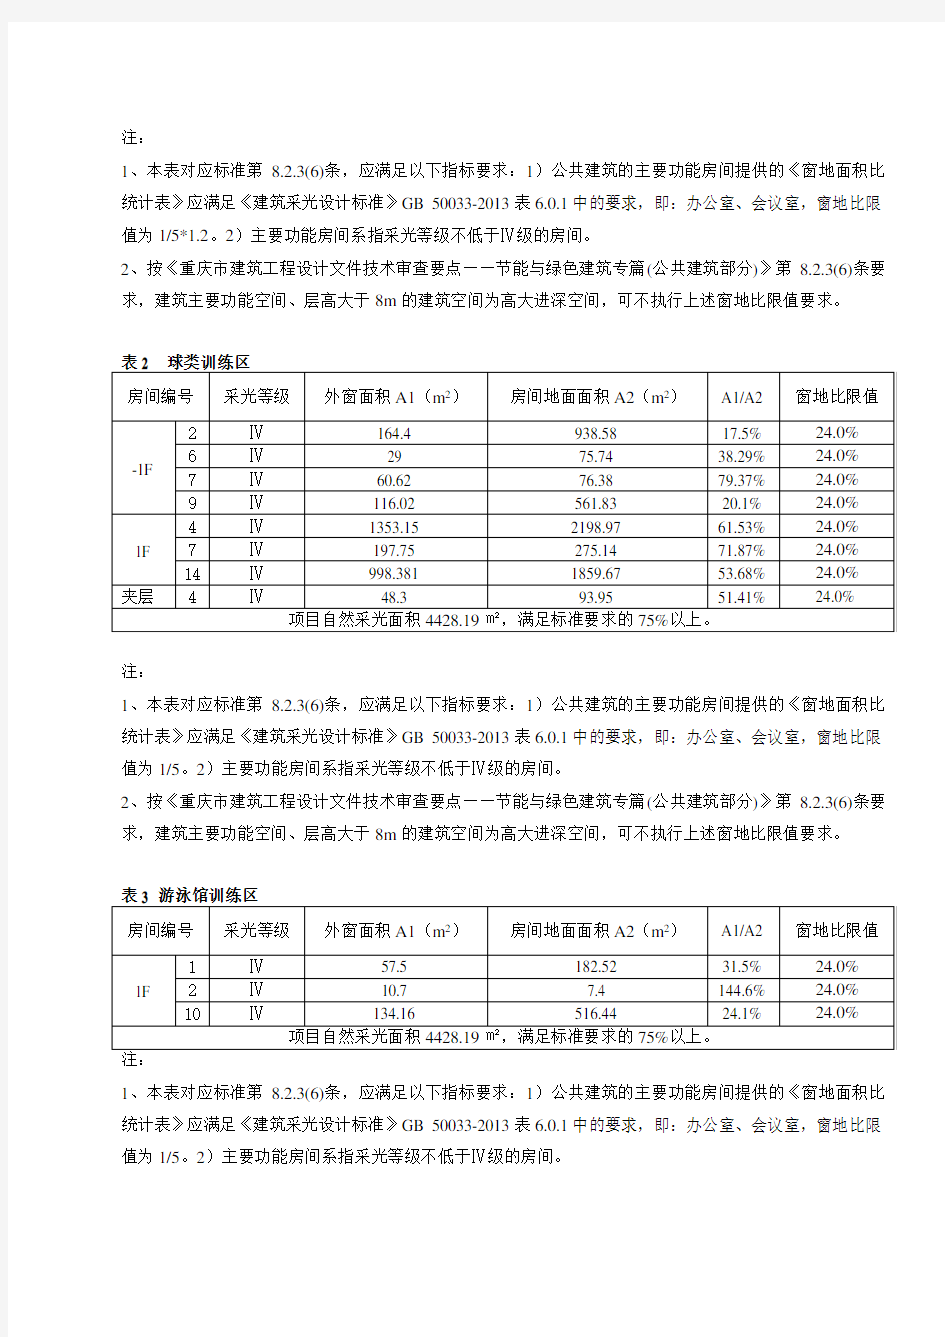 2.重庆大学体育中心项目——分析计算书(建筑)-改